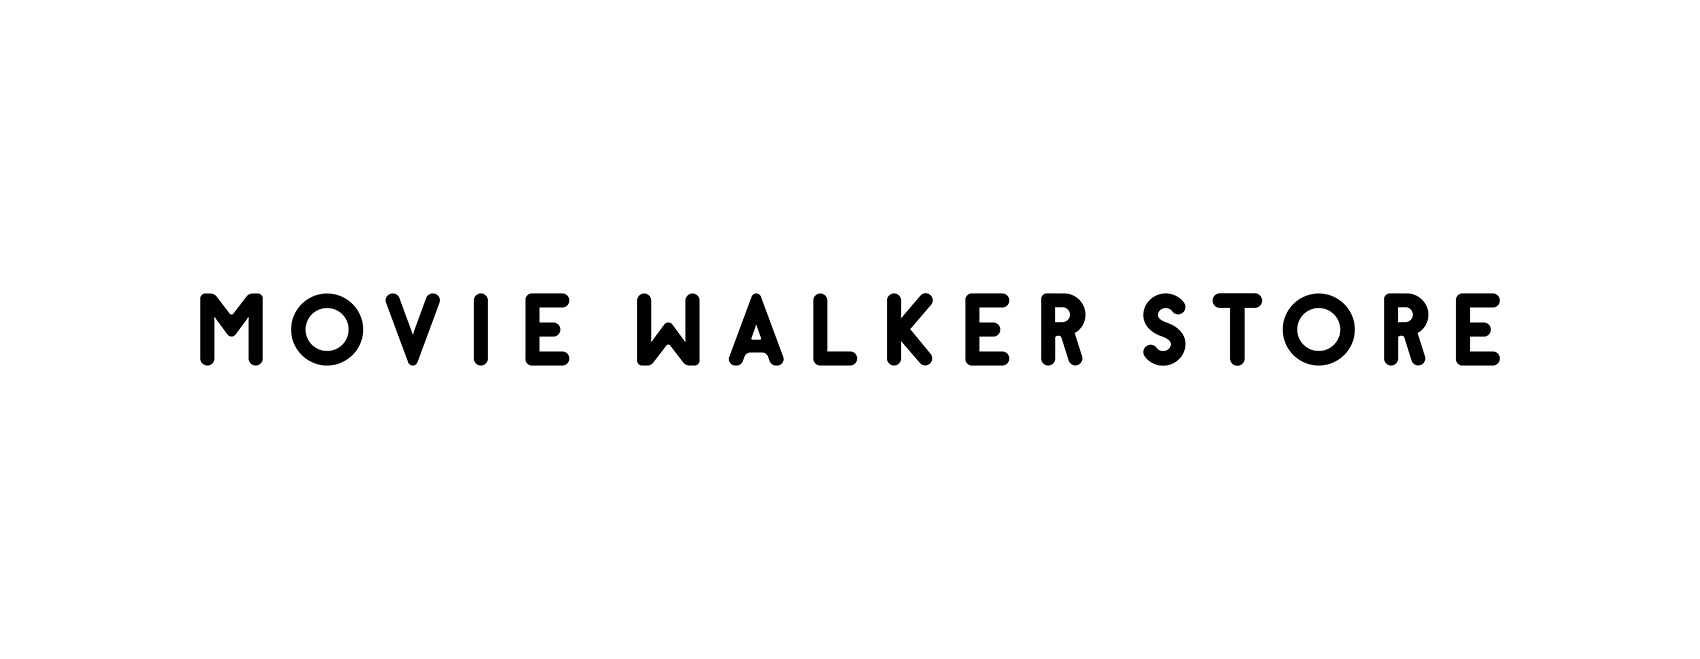 MOVIE WALKER STORE｜ムービーウォーカーストア｜映画、パンフレット、ポスター、Tシャツなどのグッズ販売